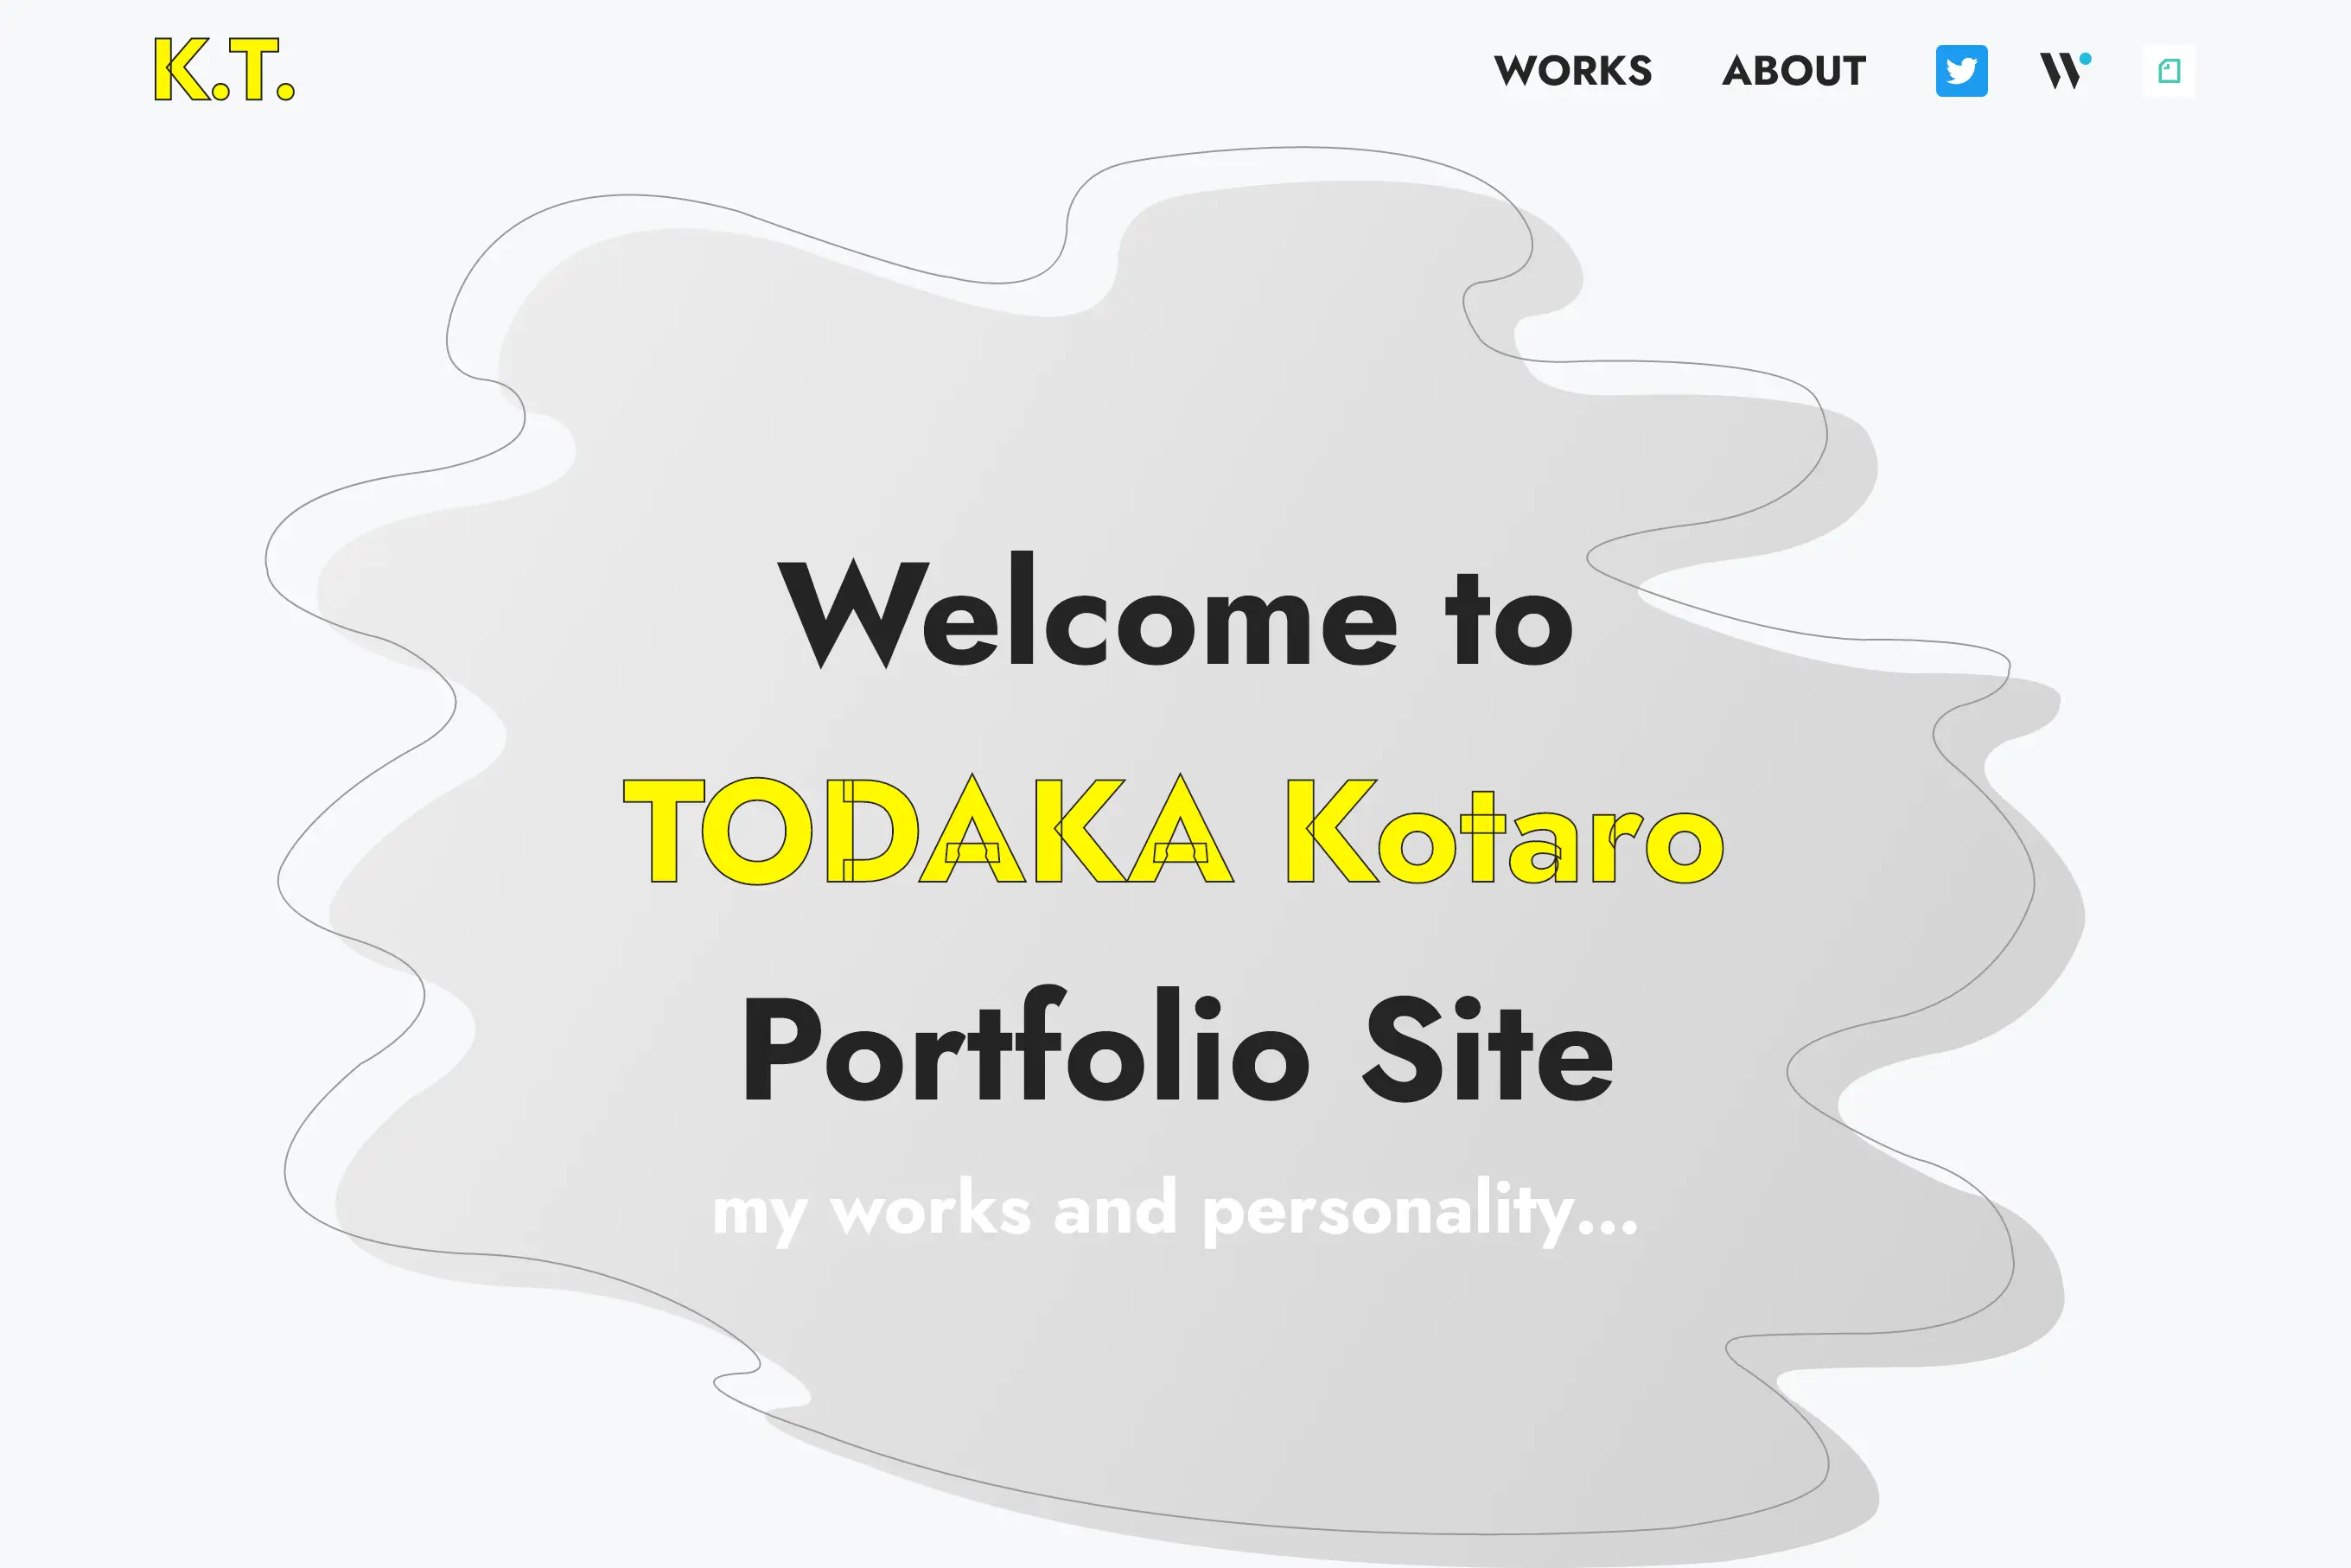 Todaka Kotaro Portfolio Site